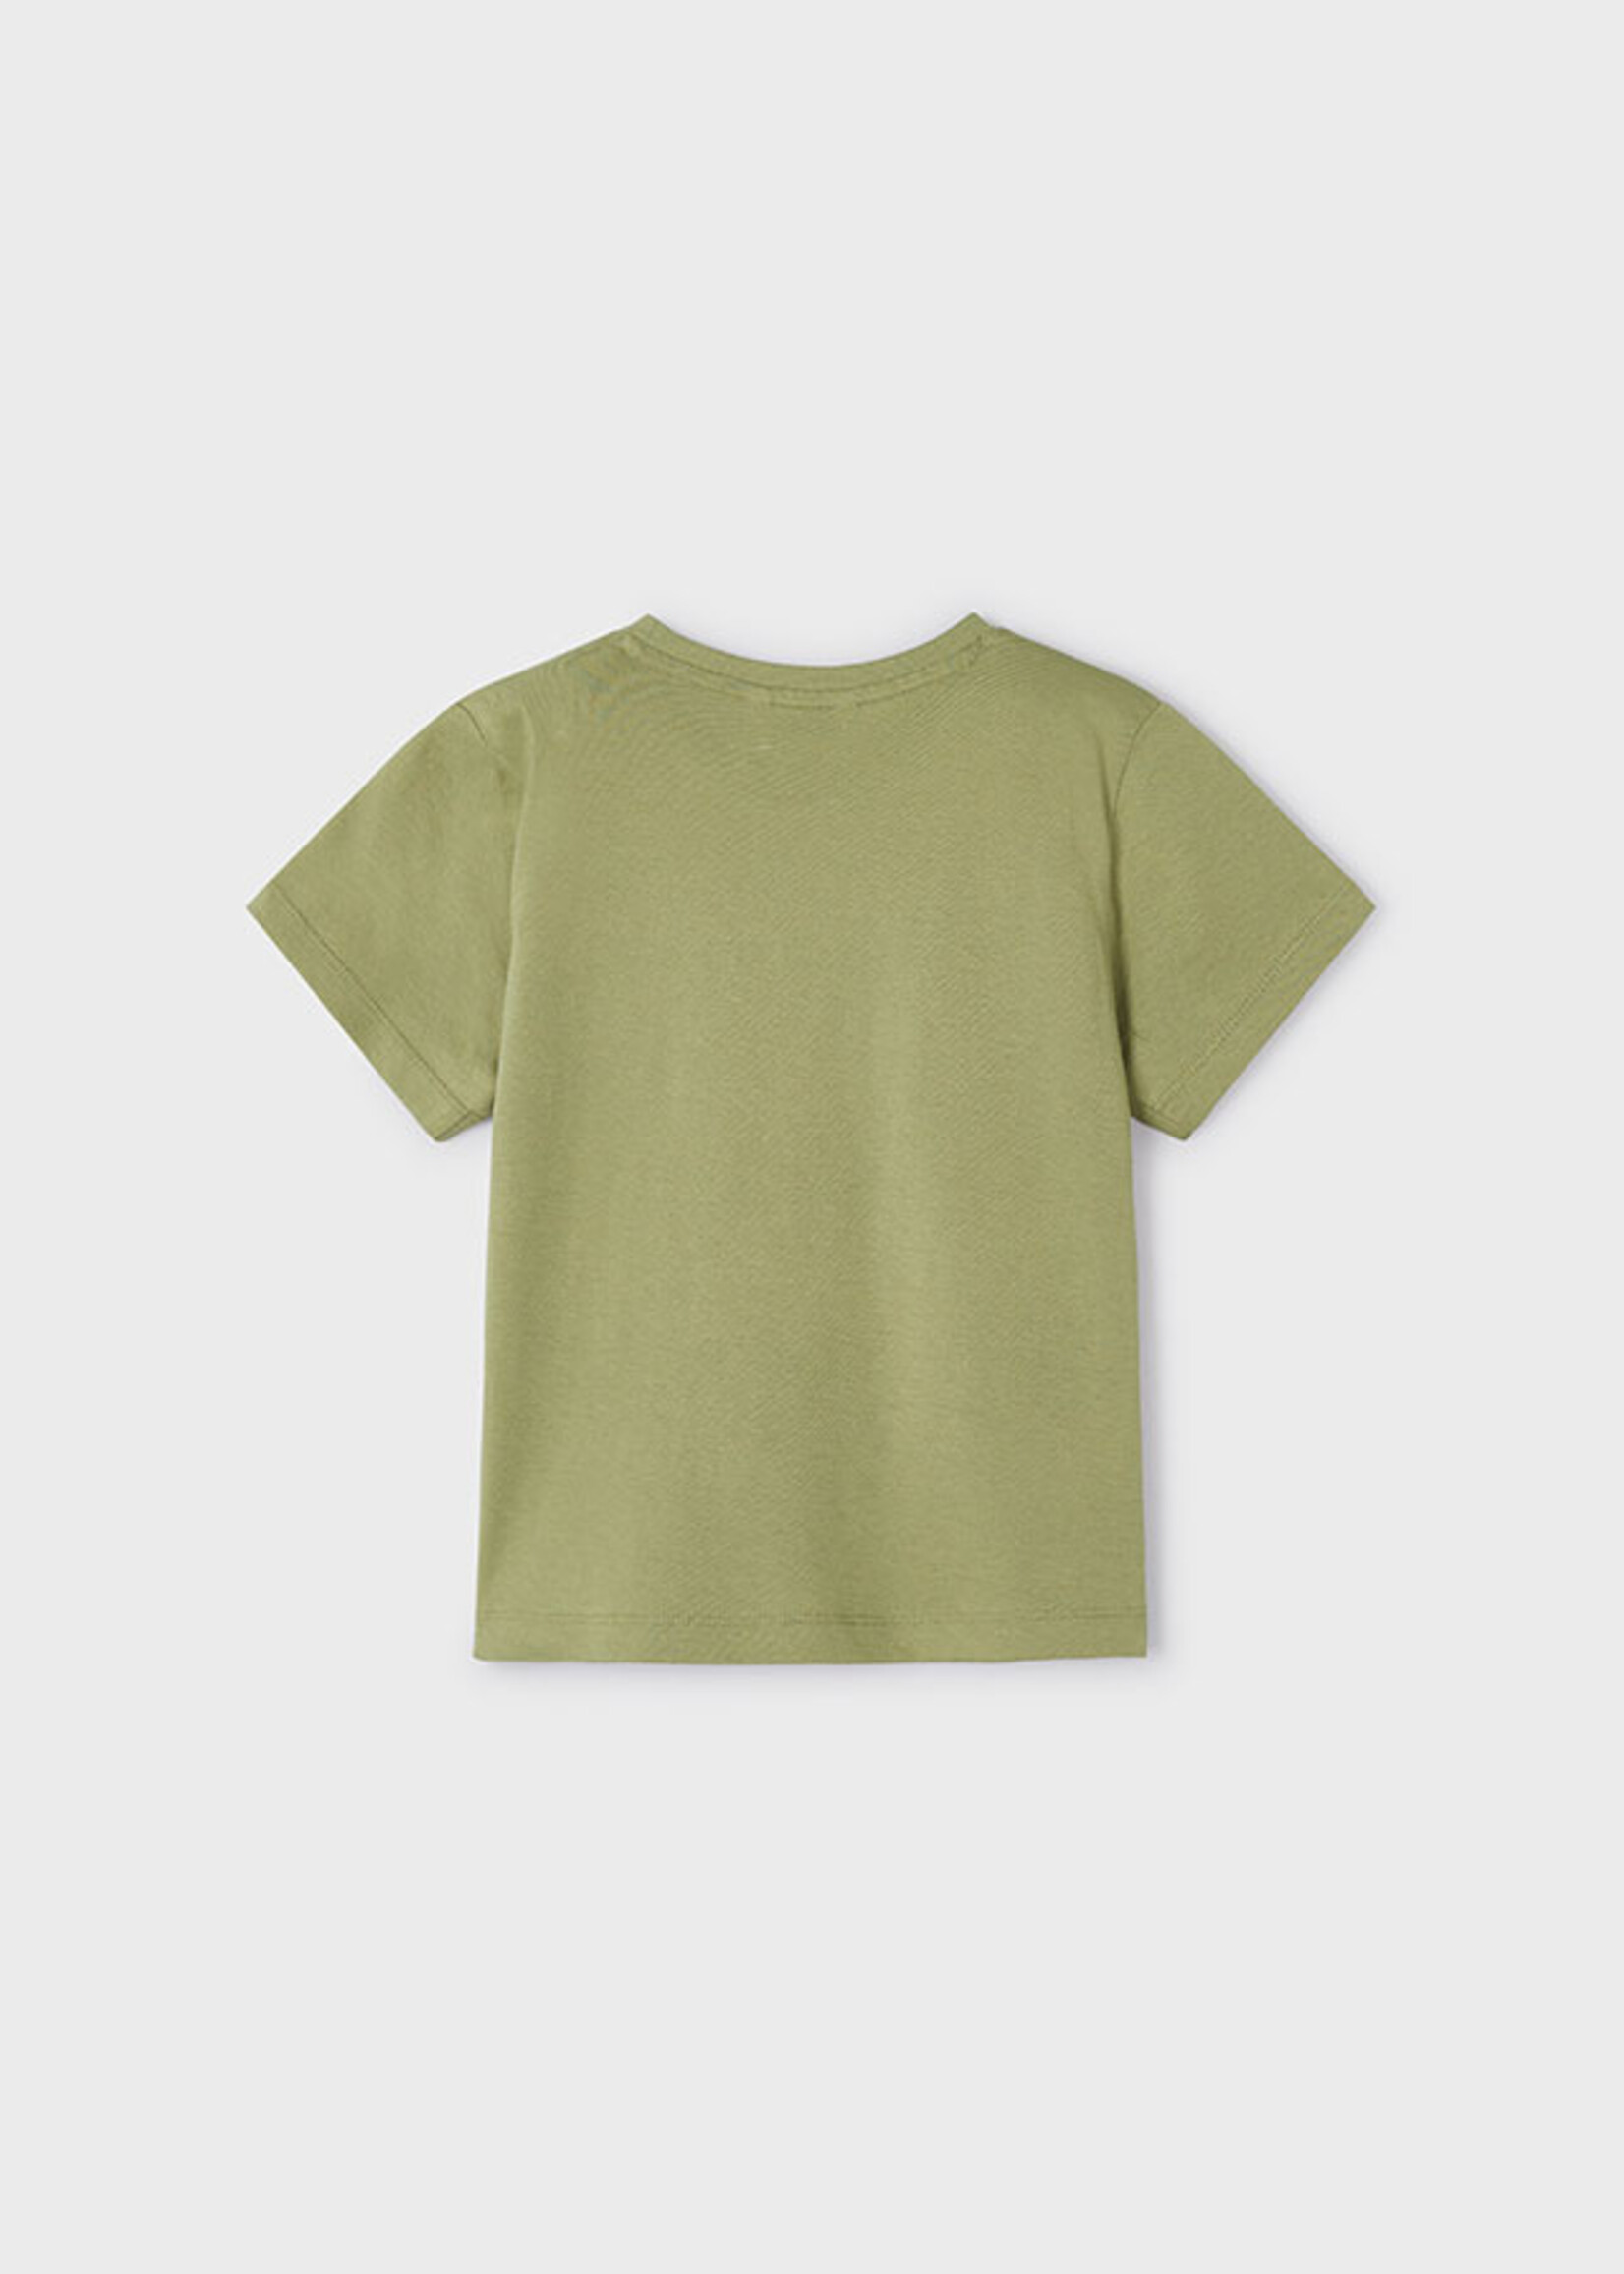 Mayoral Mini Boy             3011 S/s t-shirt                   Iguana grn